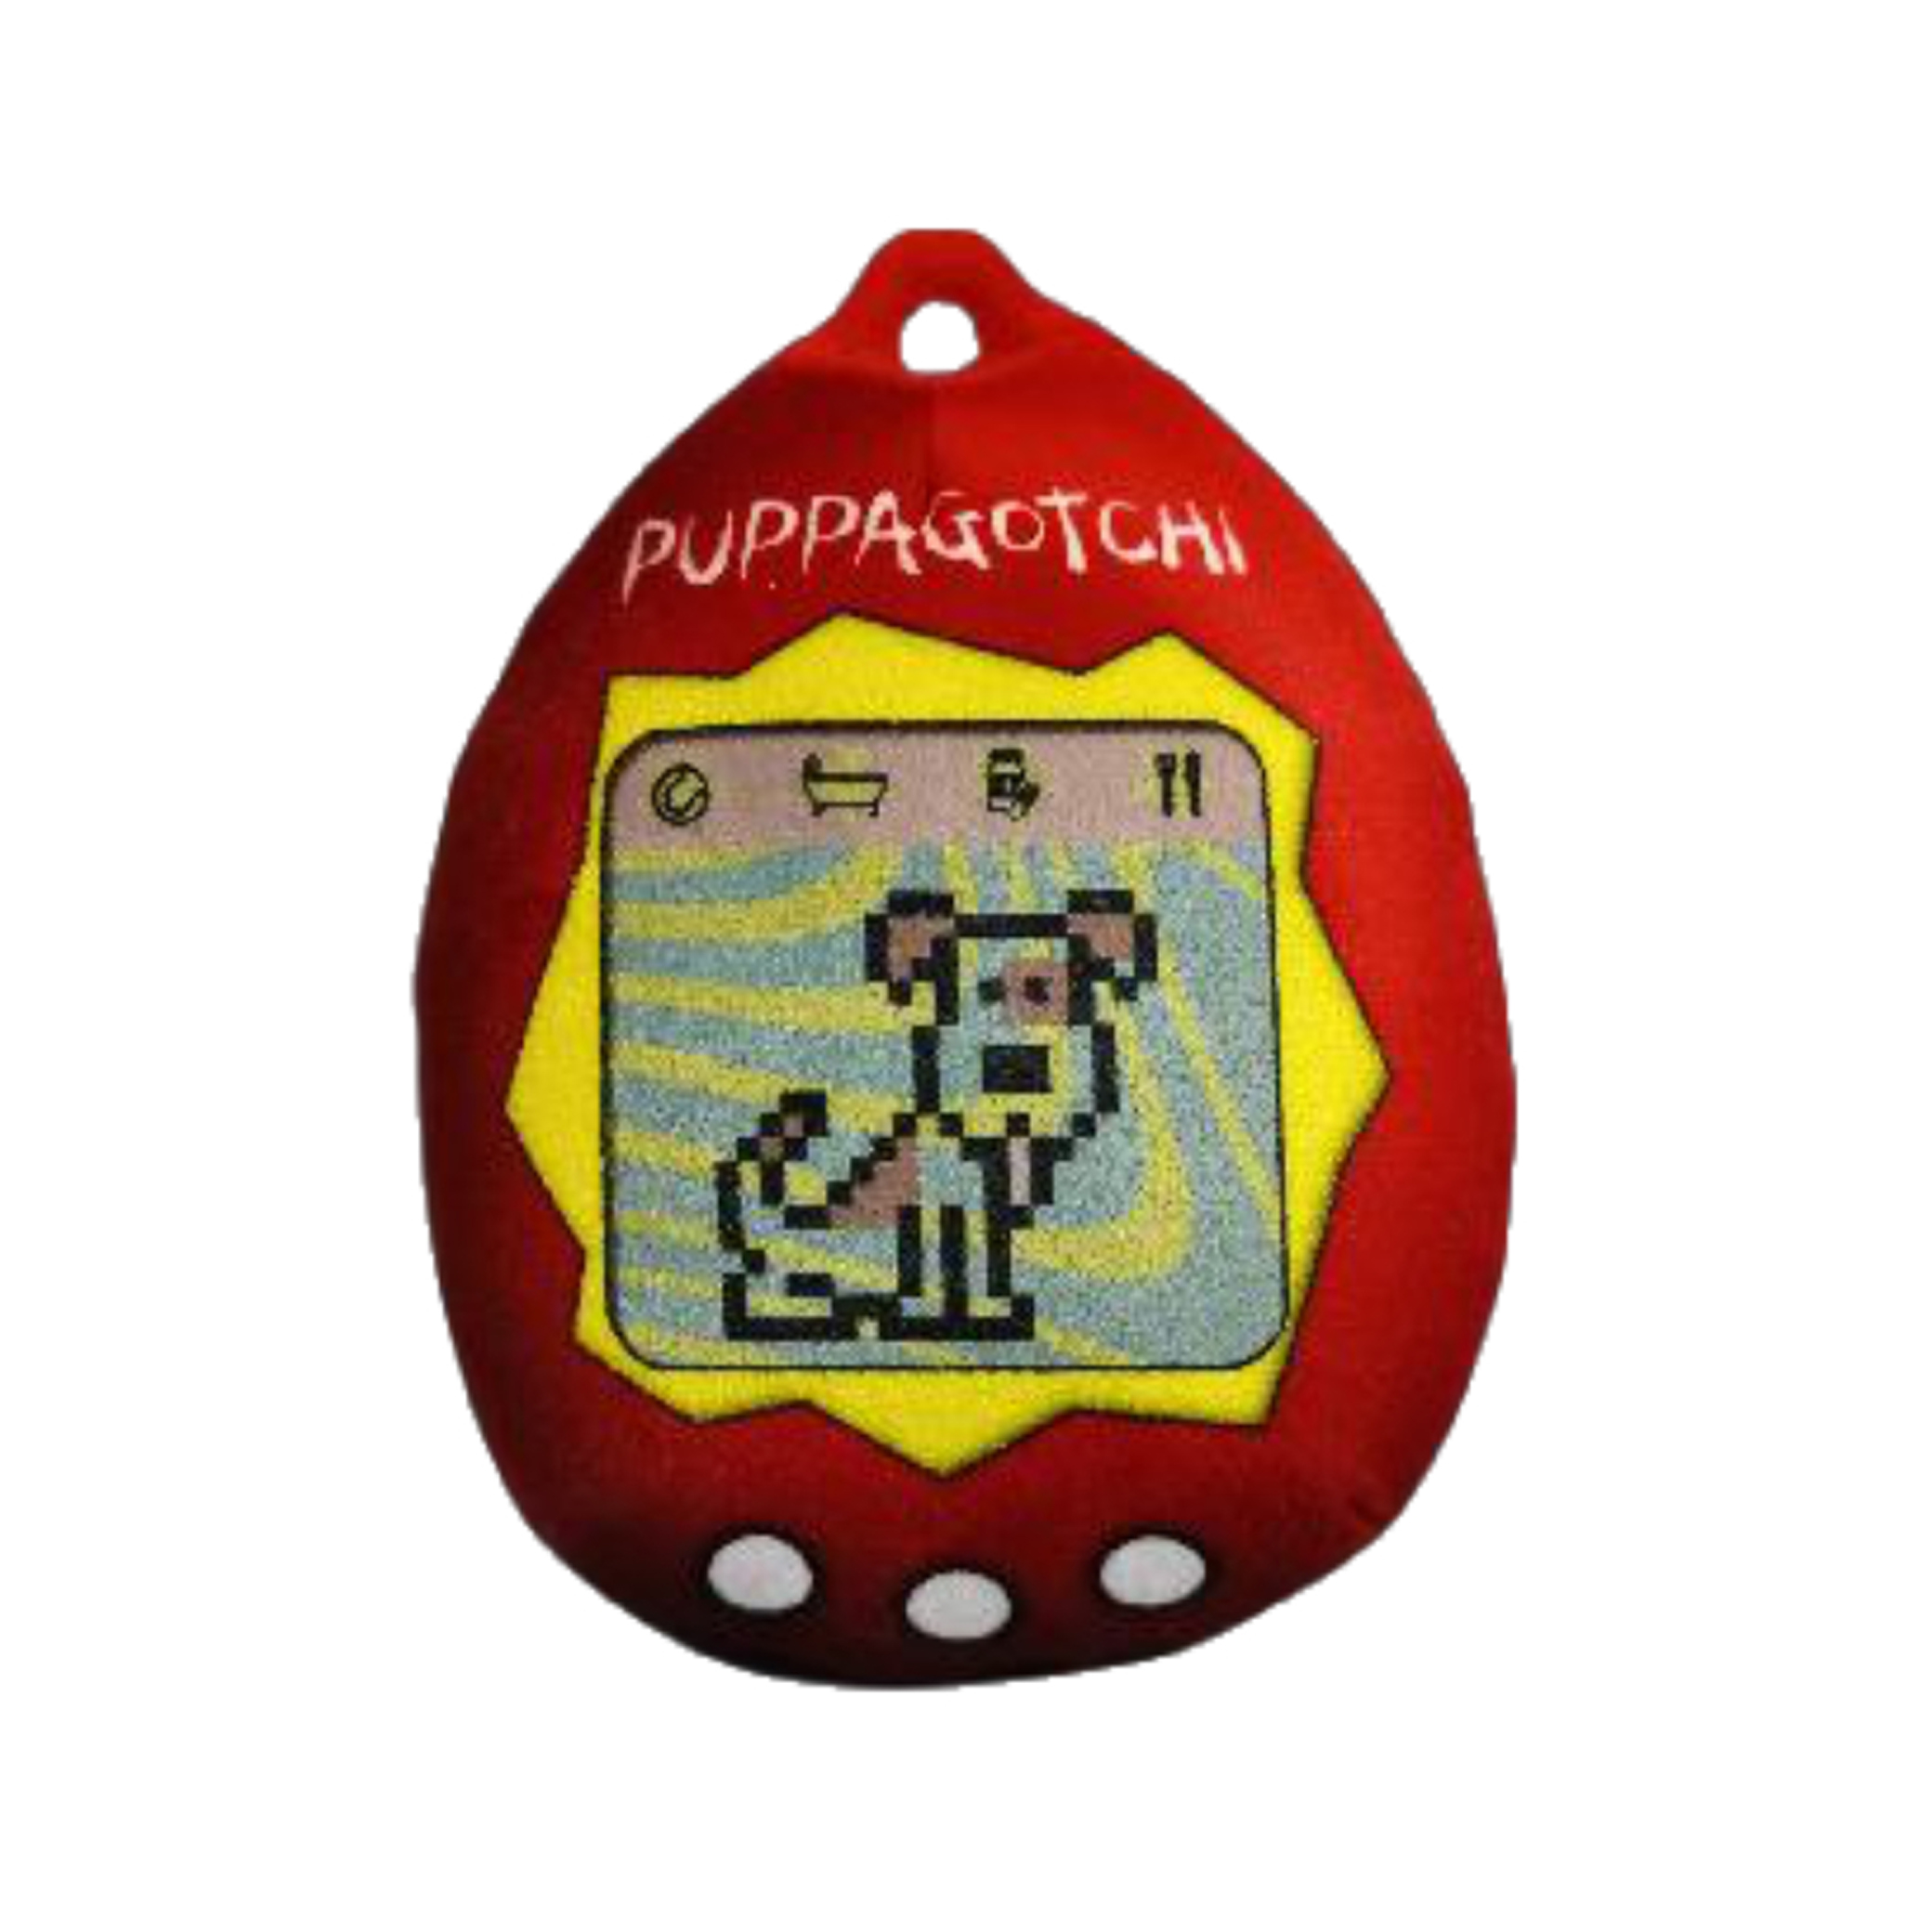 puppagotchi-plush-dog-toy